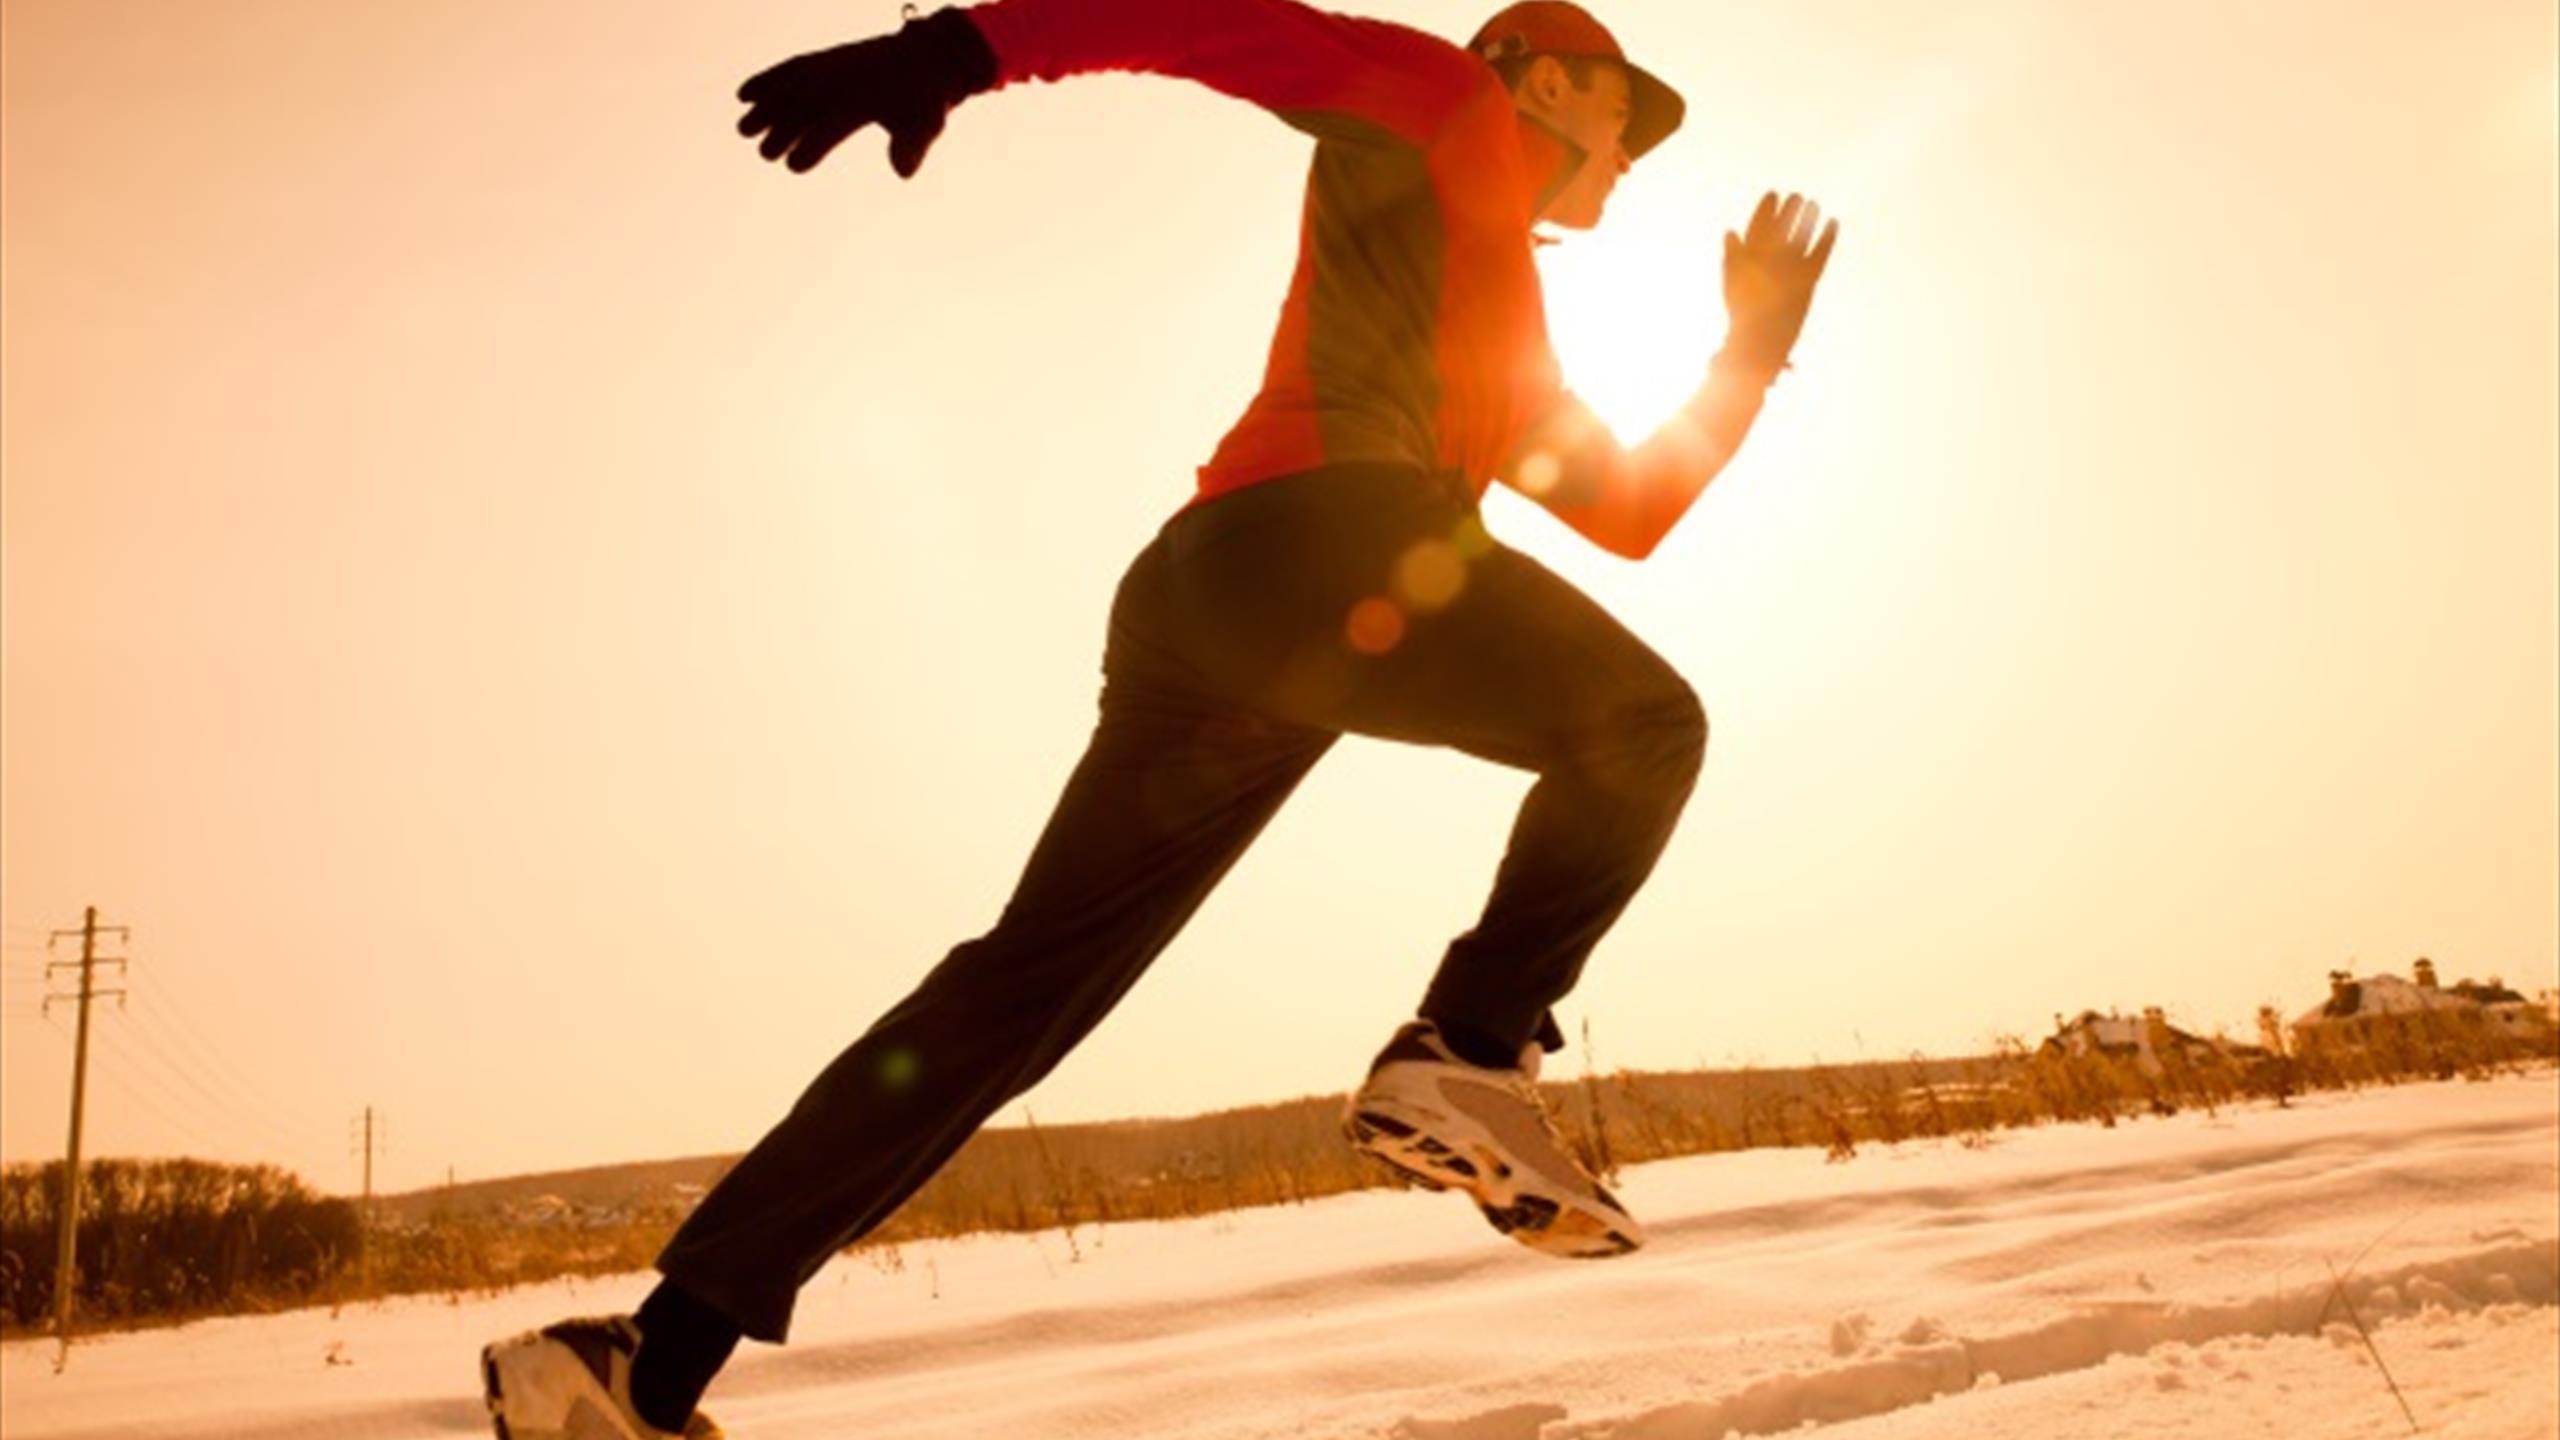 Running : quel équipement pour courir en hiver ? - Cézigue